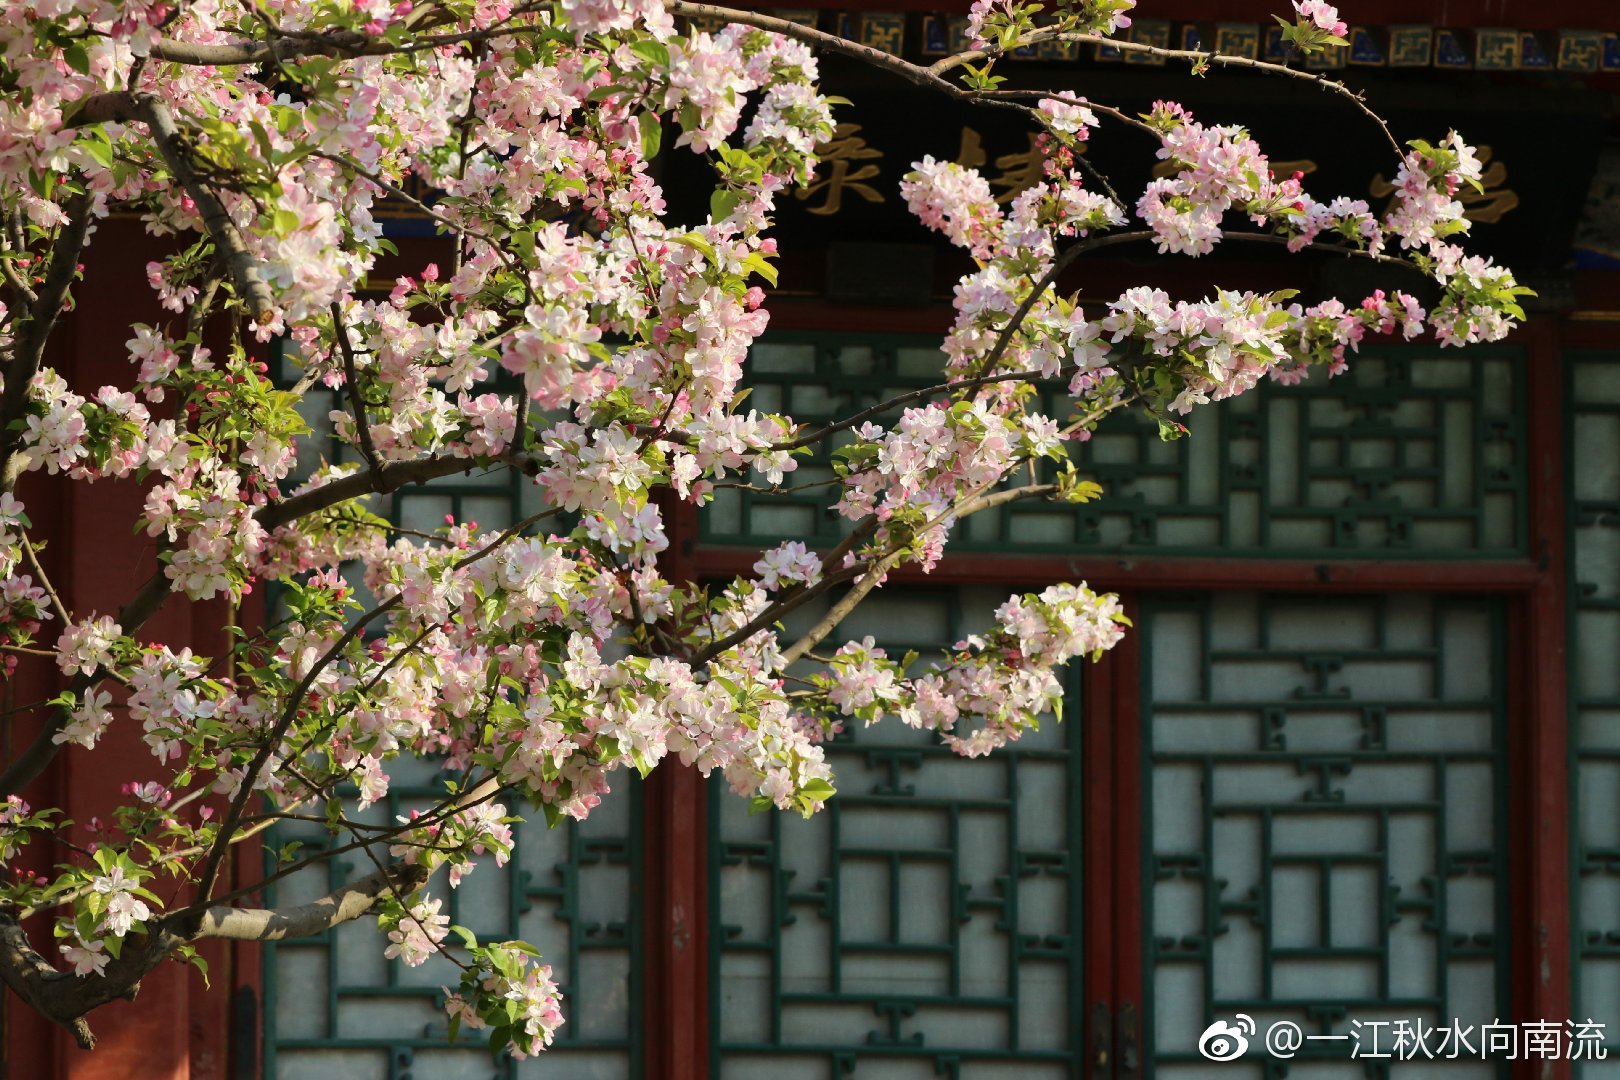 【携程攻略】北京怡红院景点,怡红院是大观园中规格最高，面积最大的园子。她也是大观园中唯一有门…